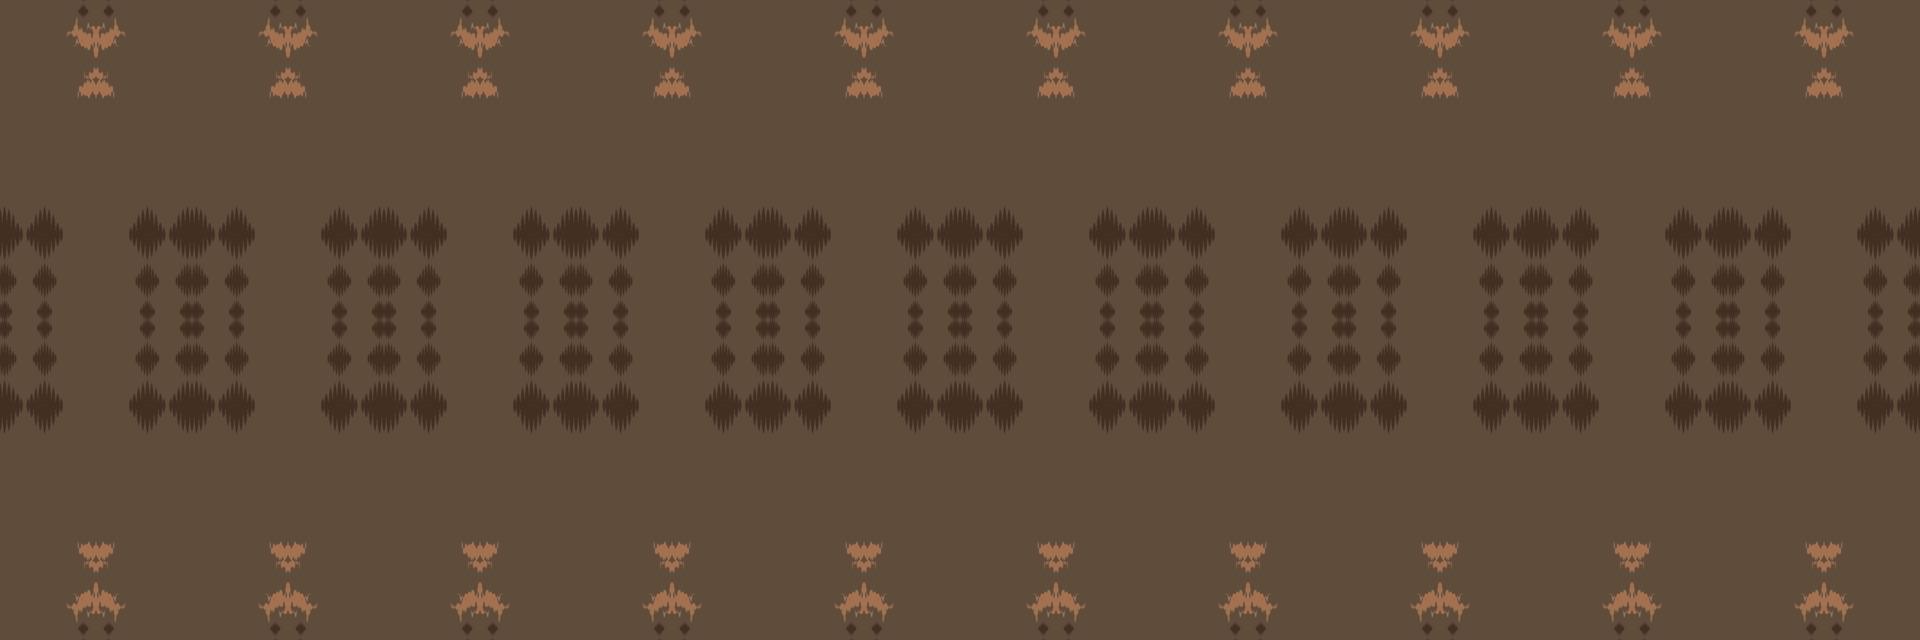 ikat nahtloses muster nahtloses muster des stammes-kreuzes. ethnische geometrische batik ikkat digitaler vektor textildesign für drucke stoff saree mughal pinsel symbol schwaden textur kurti kurtis kurtas